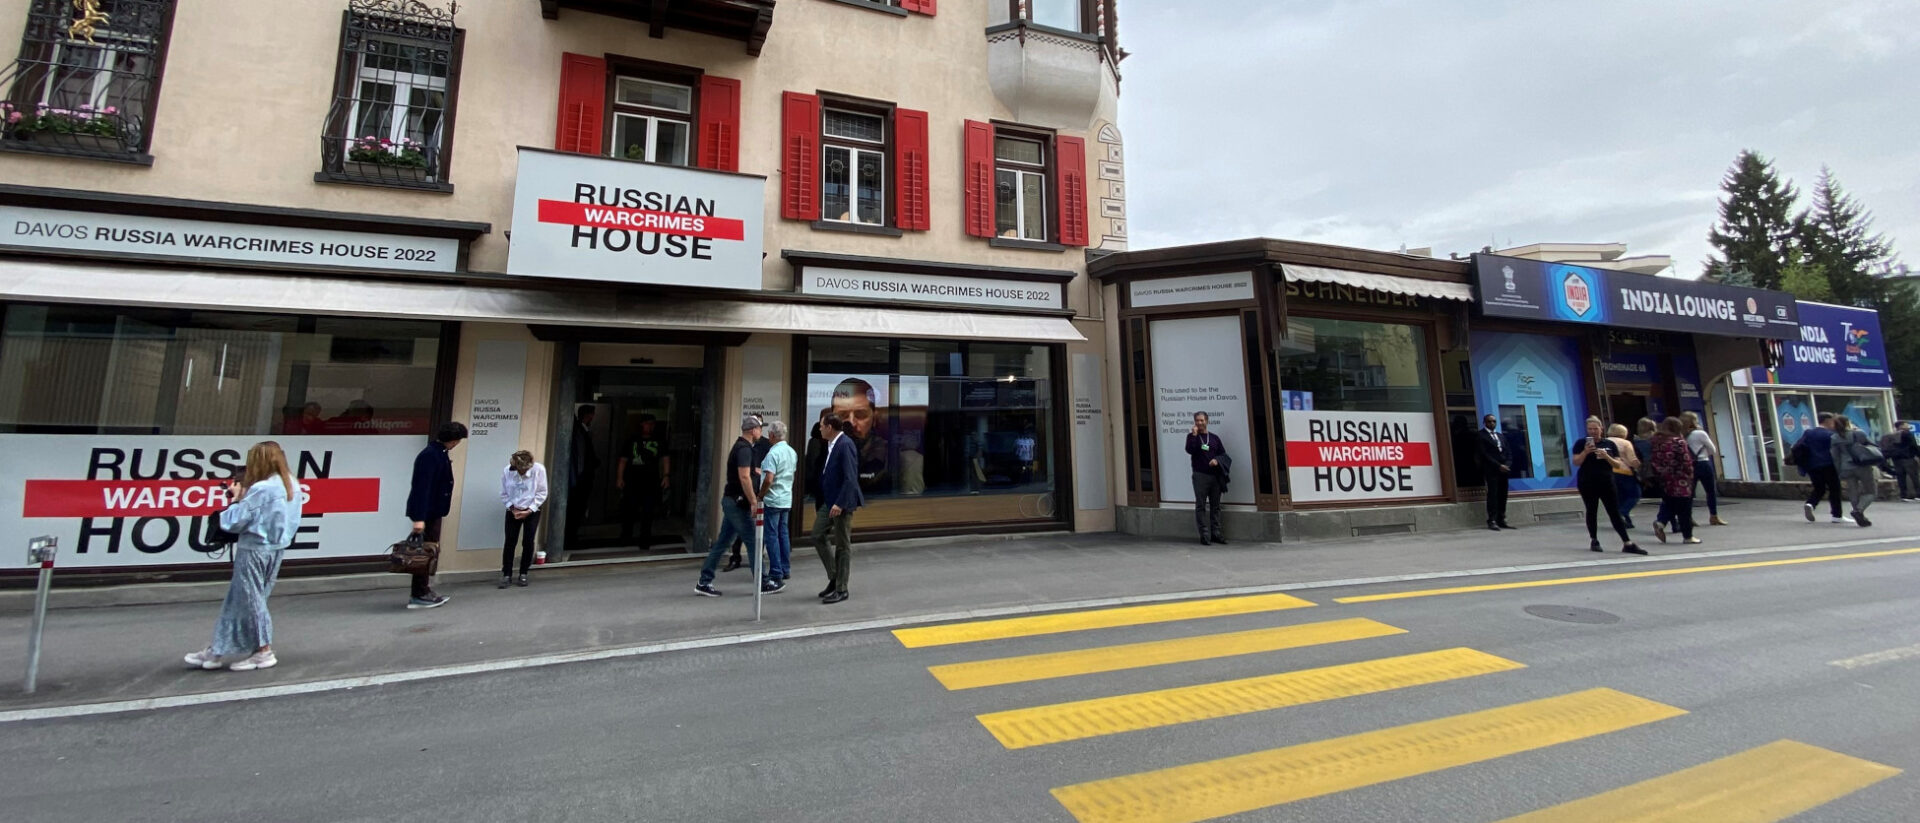 Das "Russian Warcrimes House" macht während des WEF in Davos auf Putins Kriegsverbrechen aufmerksam.